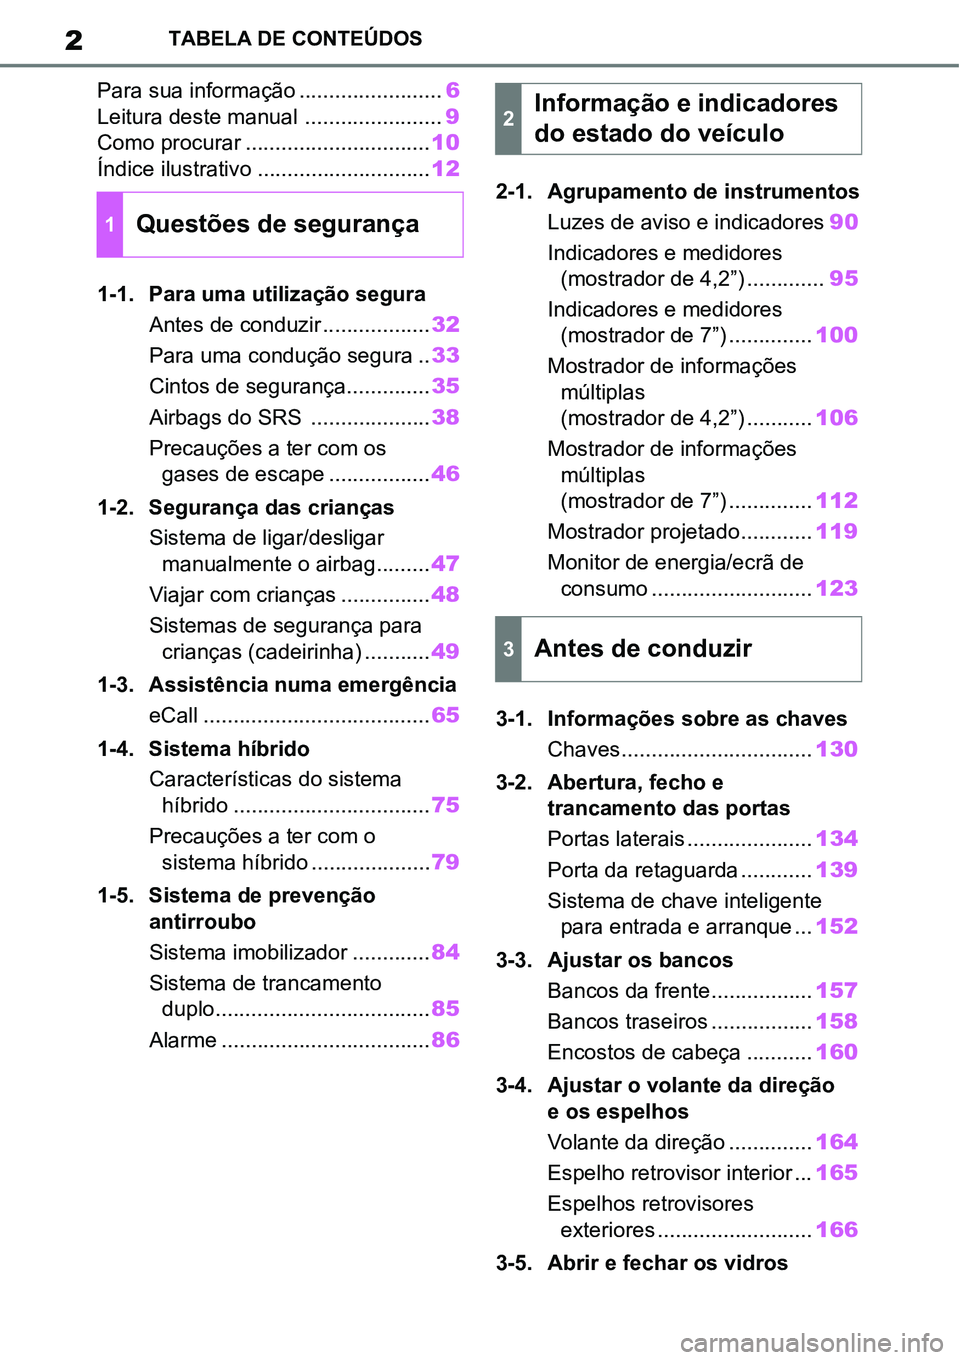 TOYOTA YARIS CROSS 2022  Manual de utilização (in Portuguese) 2TABELA DE CONTEÚDOS
Para sua informação ........................6
Leitura deste manual .......................9
Como procurar ...............................10
Índice ilustrativo ................